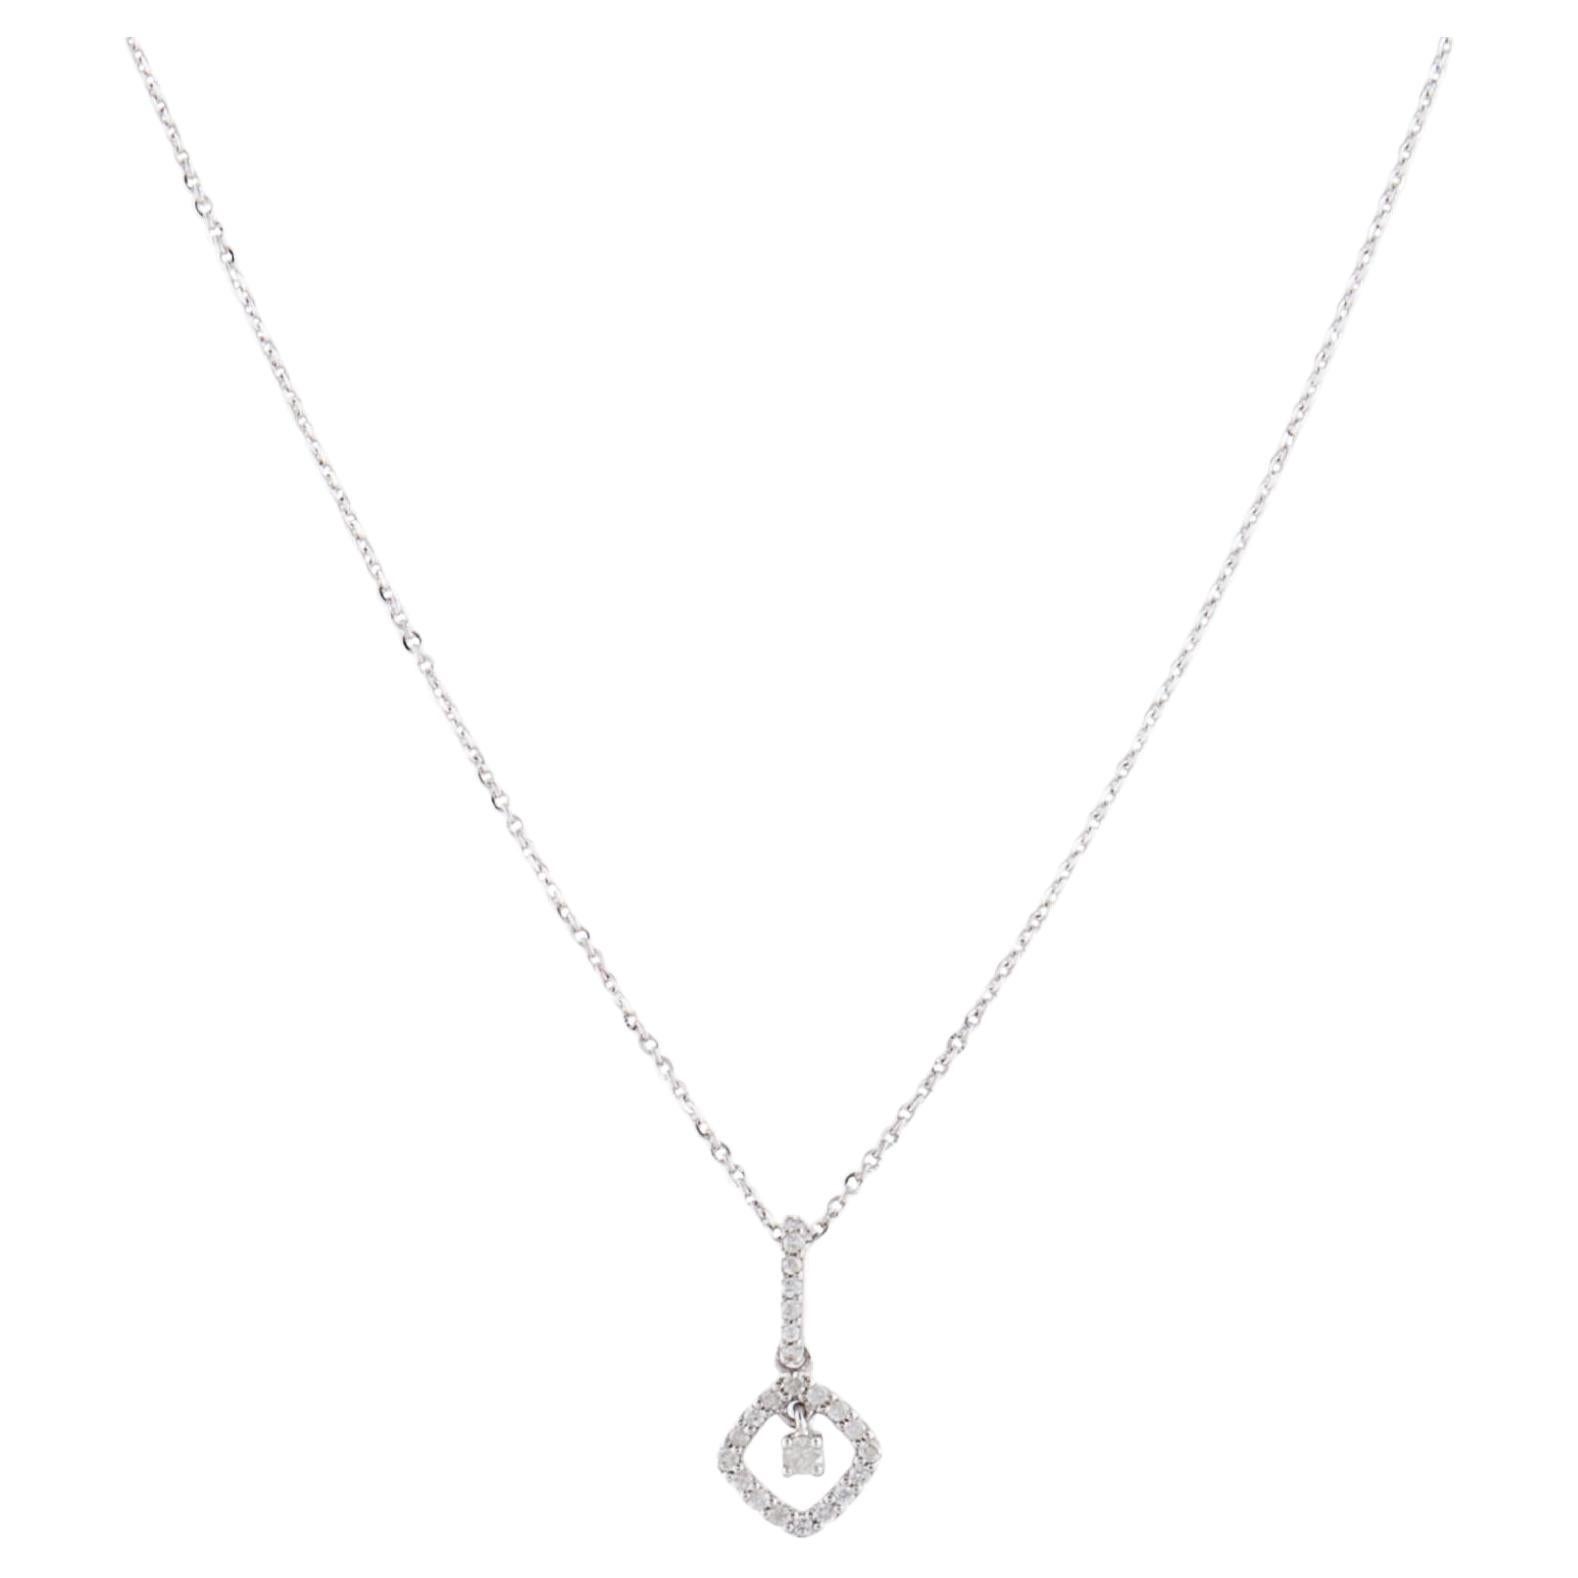 Luxury 14K Diamond Pendant Necklace - Elegance & Timeless Statement Piece (Collier à pendentifs en diamants de luxe)